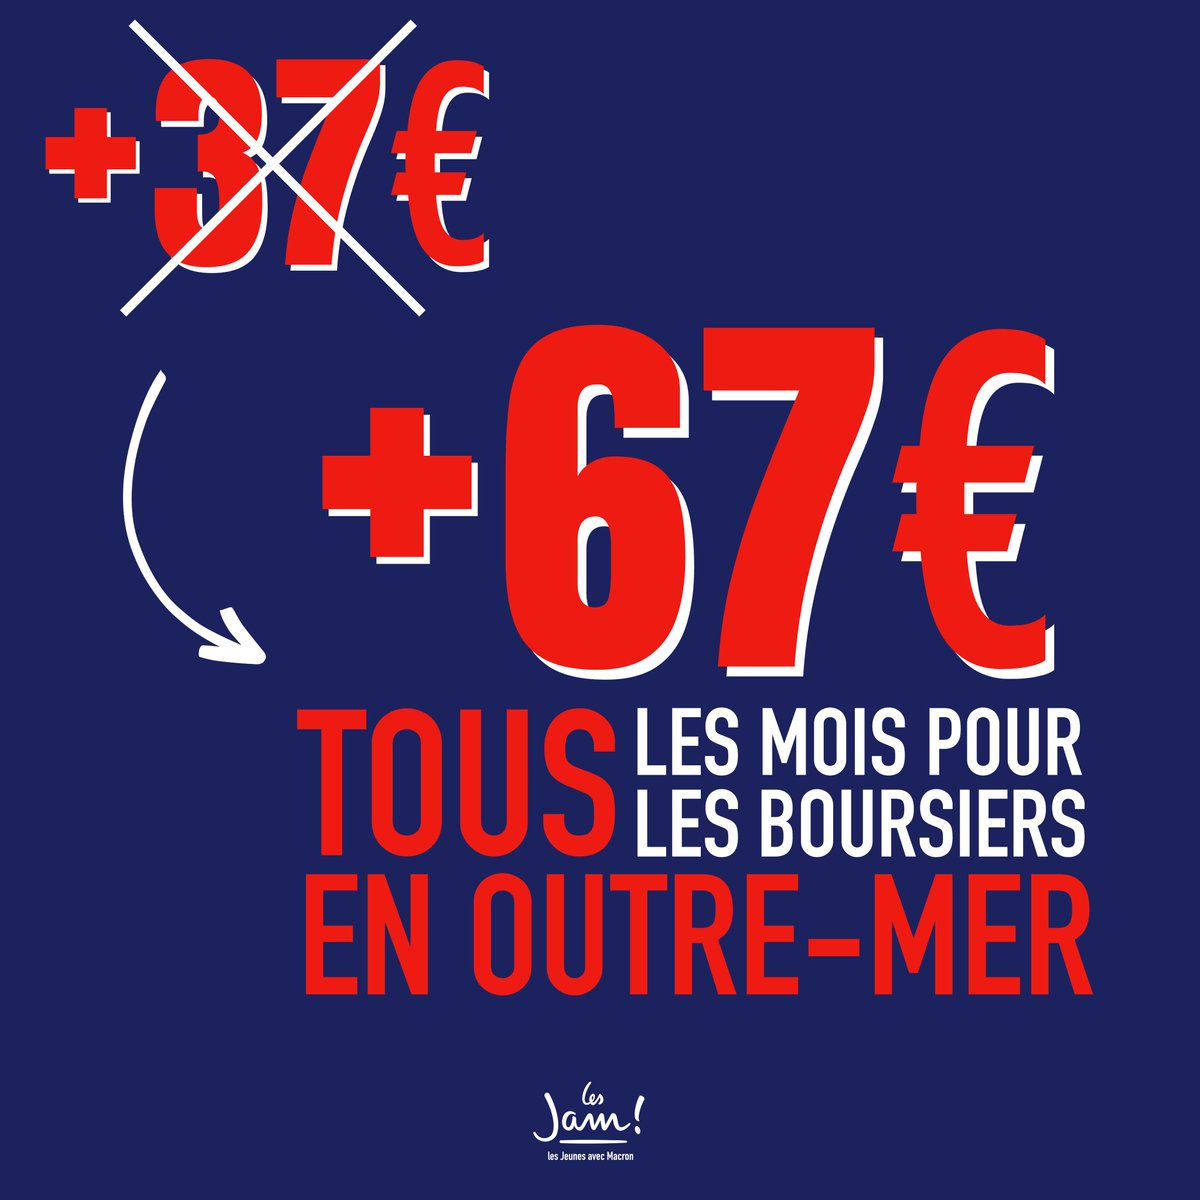 Dès la rentrée les bourses des étudiants en Outre-mer augmenteront de 67€ par mois !

30€ de plus que dans l'hexagone pour faire face à la vie chère.

#CNRJeunesse